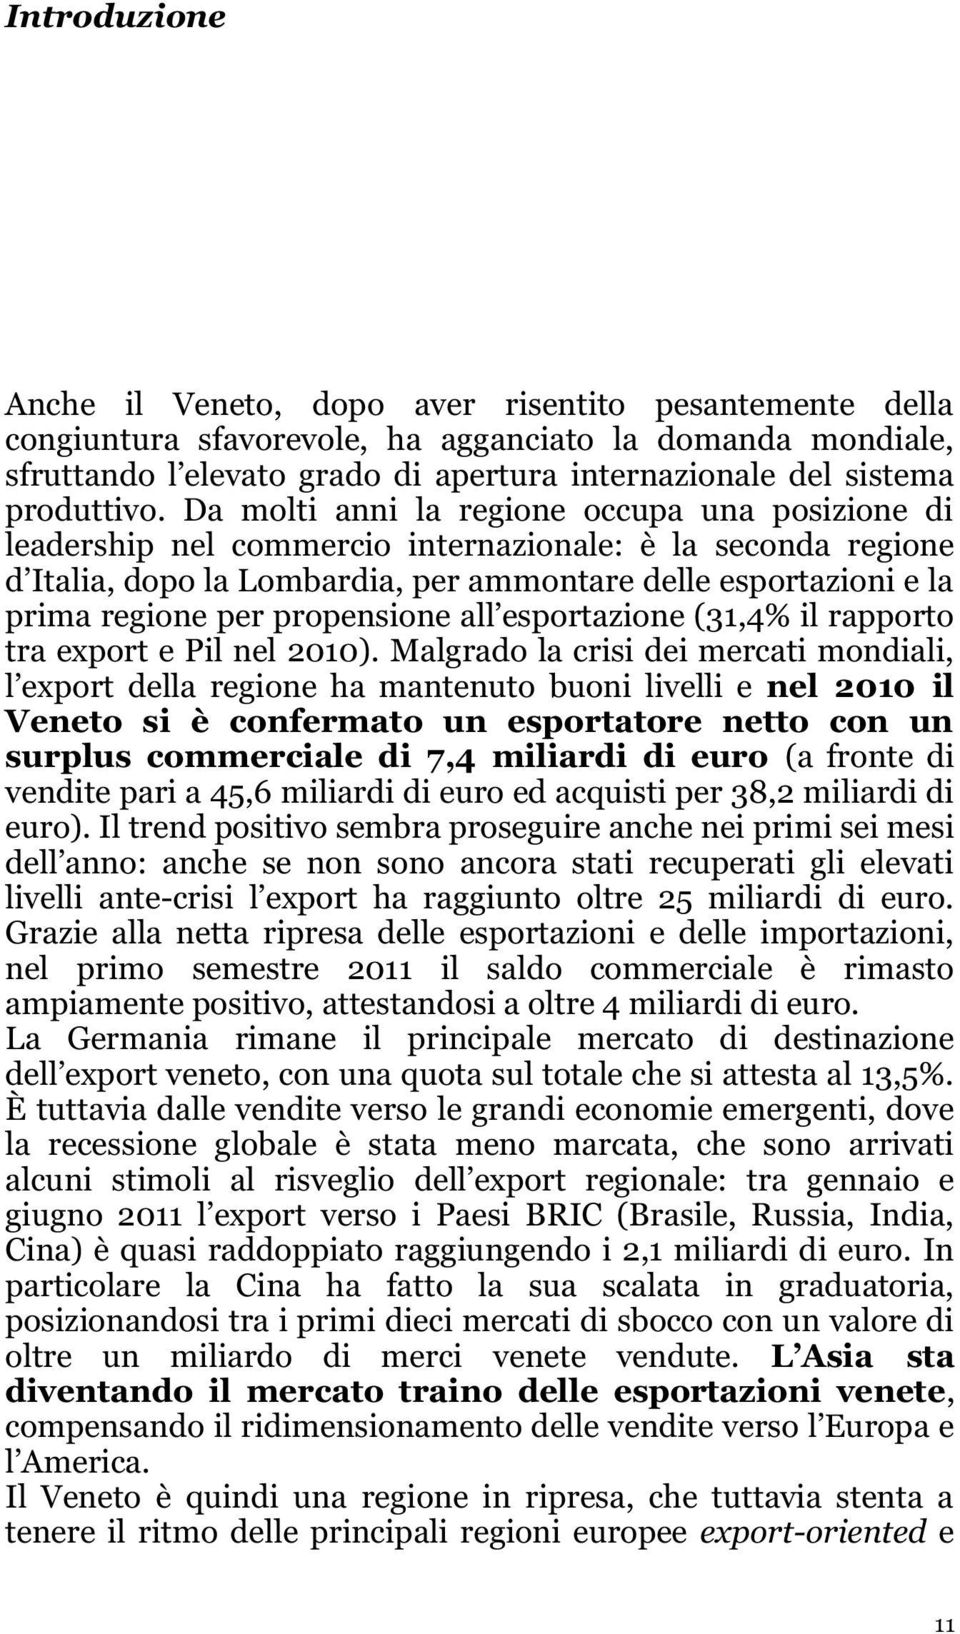 Malgrado la crisi dei mercati mondiali, rt della regione ha mantenuto buoni livelli e nel 2010 il Veneto si è confermato un esportatore netto con un surplus commerciale di 7,4 miliardi di euro (a